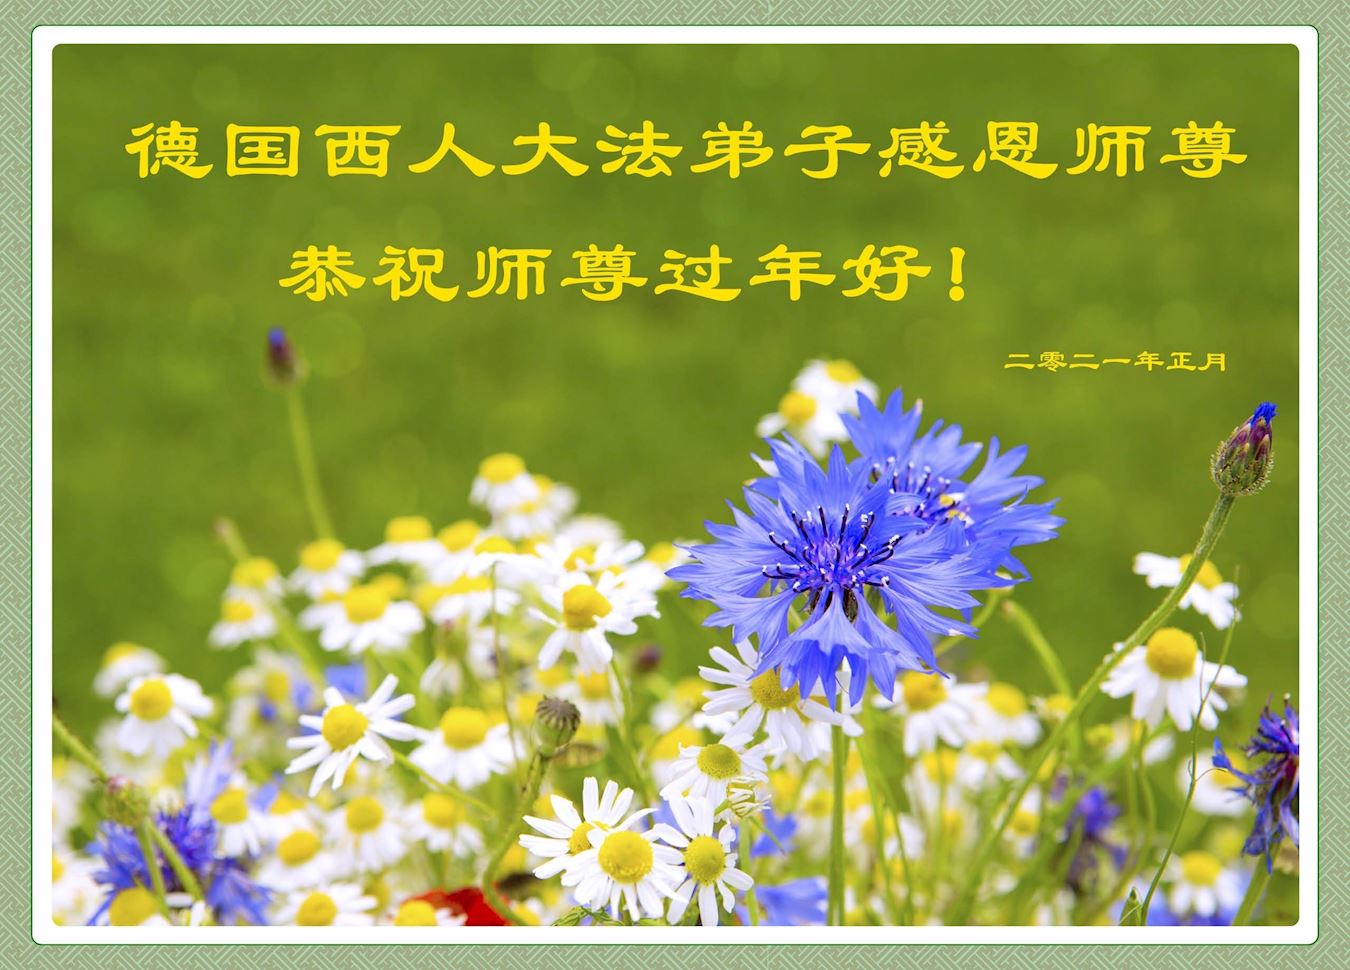 Image for article Alemanha: praticantes ocidentais do Falun Dafa recordam suas experiências de cultivo e desejam ao Mestre um Feliz Ano Novo Chinês